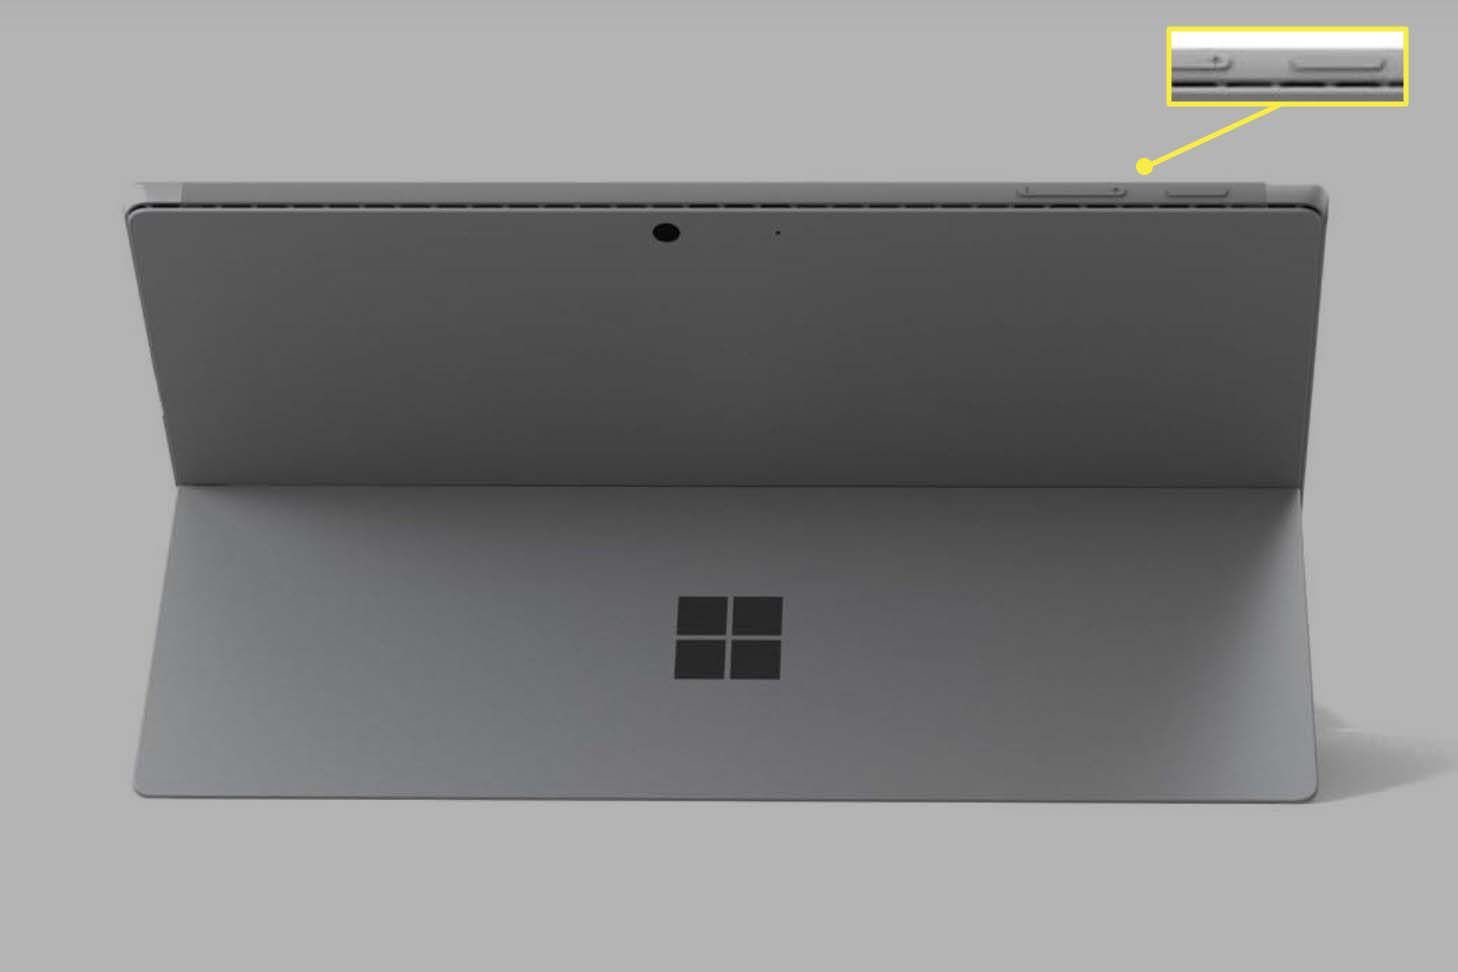 Microsoft Surface Pro zobrazený zezadu s viditelnými tlačítky napájení a zvýšení hlasitosti.